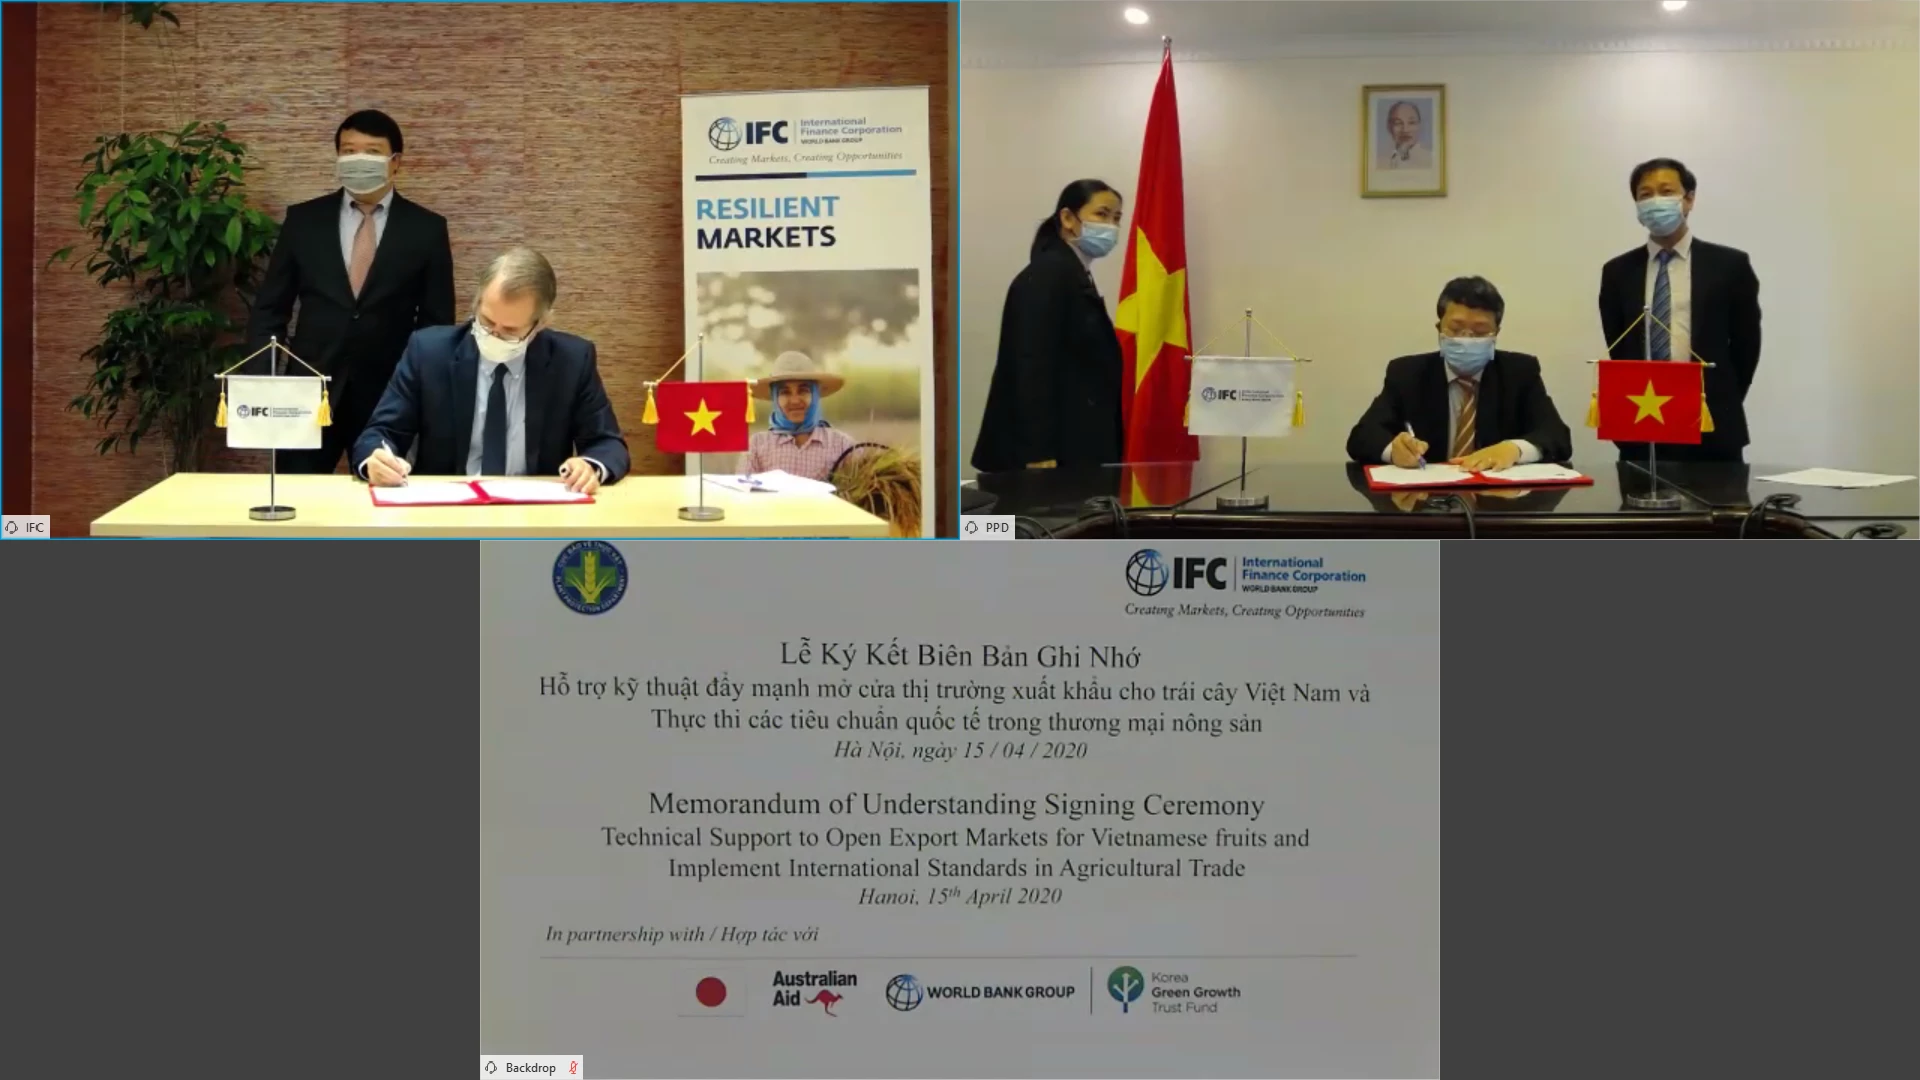 Lễ ký kết Biên bản ghi nhớ Hỗ trợ kỹ thuật đẩy mạnh mở cửa thị trường xuất khẩu trái cây cho Việt Nam và Thực thi các tiêu chuẩn trong thương mại nông sản